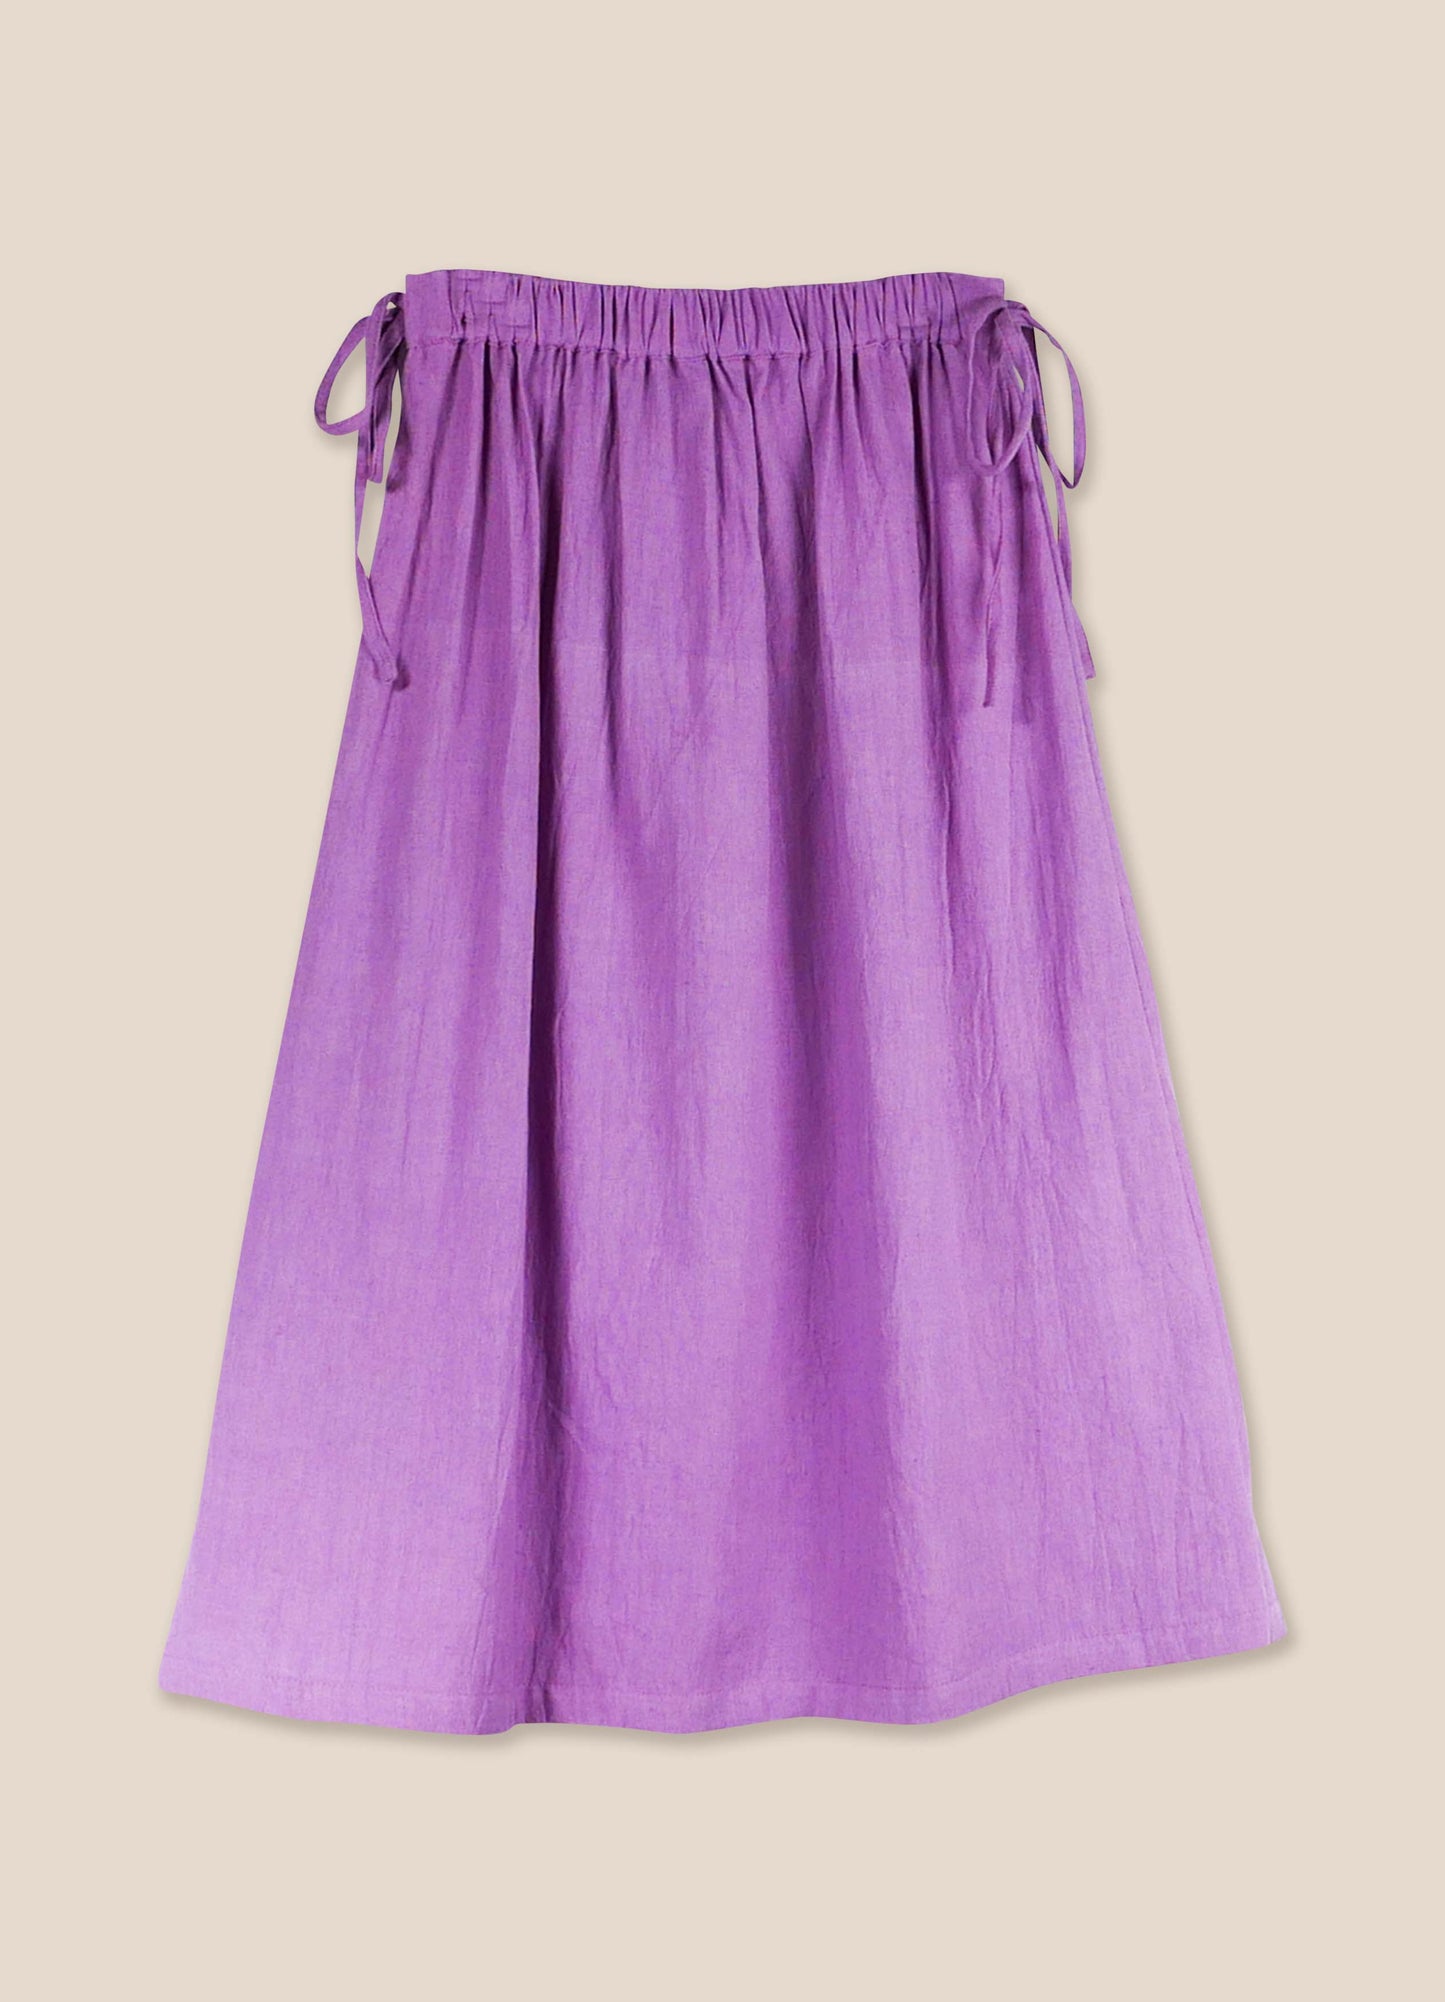 Skirt No. 24 African Violet